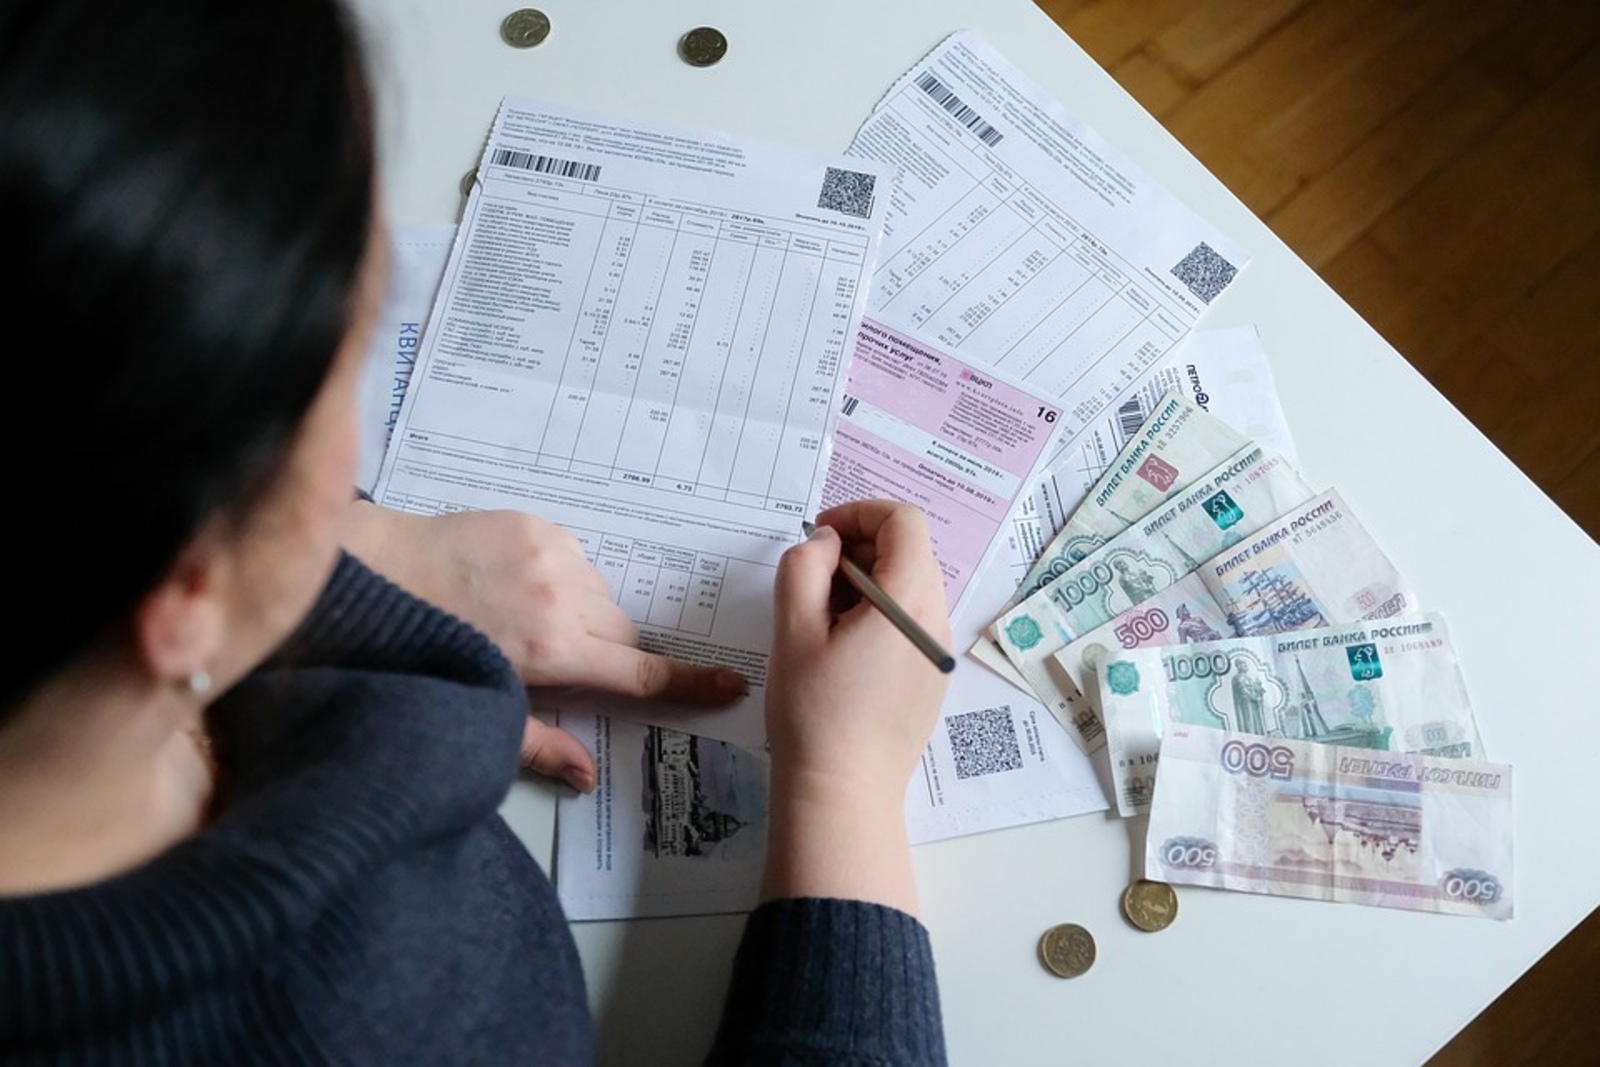  Сразу влепят штраф: в России жильцов обязали оплачивать сомнительные суммы в платежках ЖКХ  